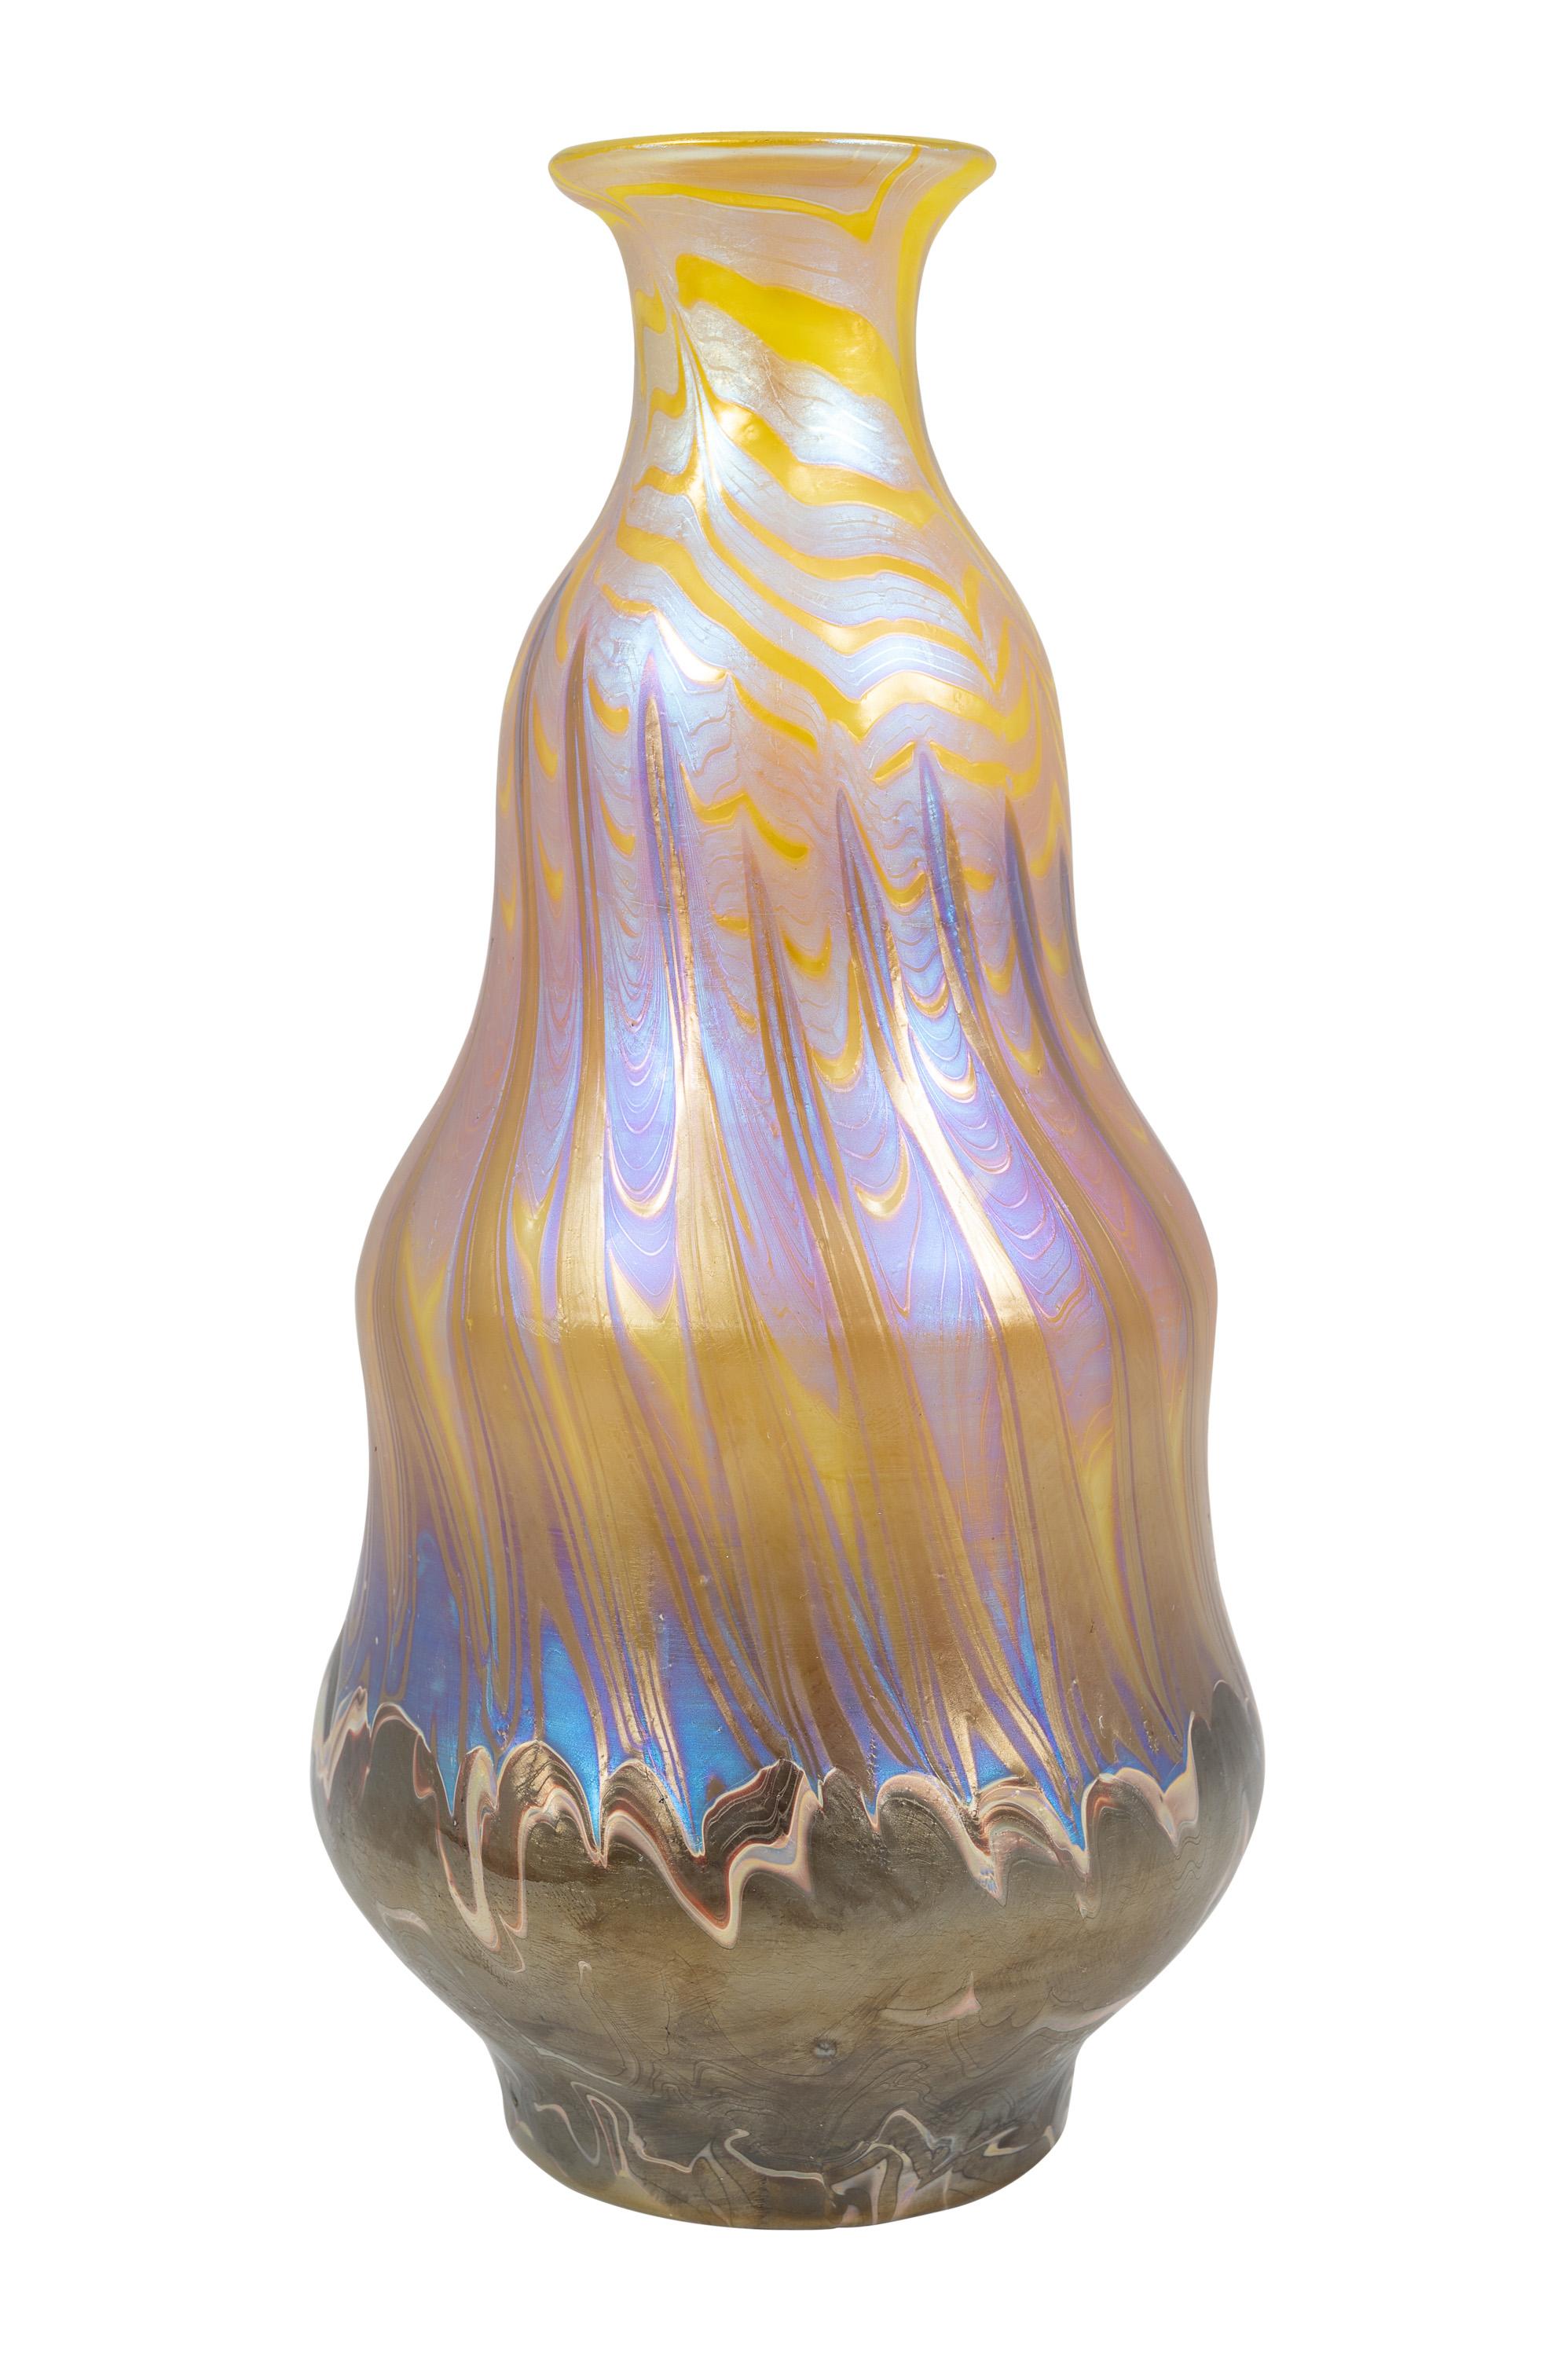 Austrian Bohemian Glass Vase Loetz circa 1900 Yellow Purple Art Nouveau Jugendstil Signed For Sale